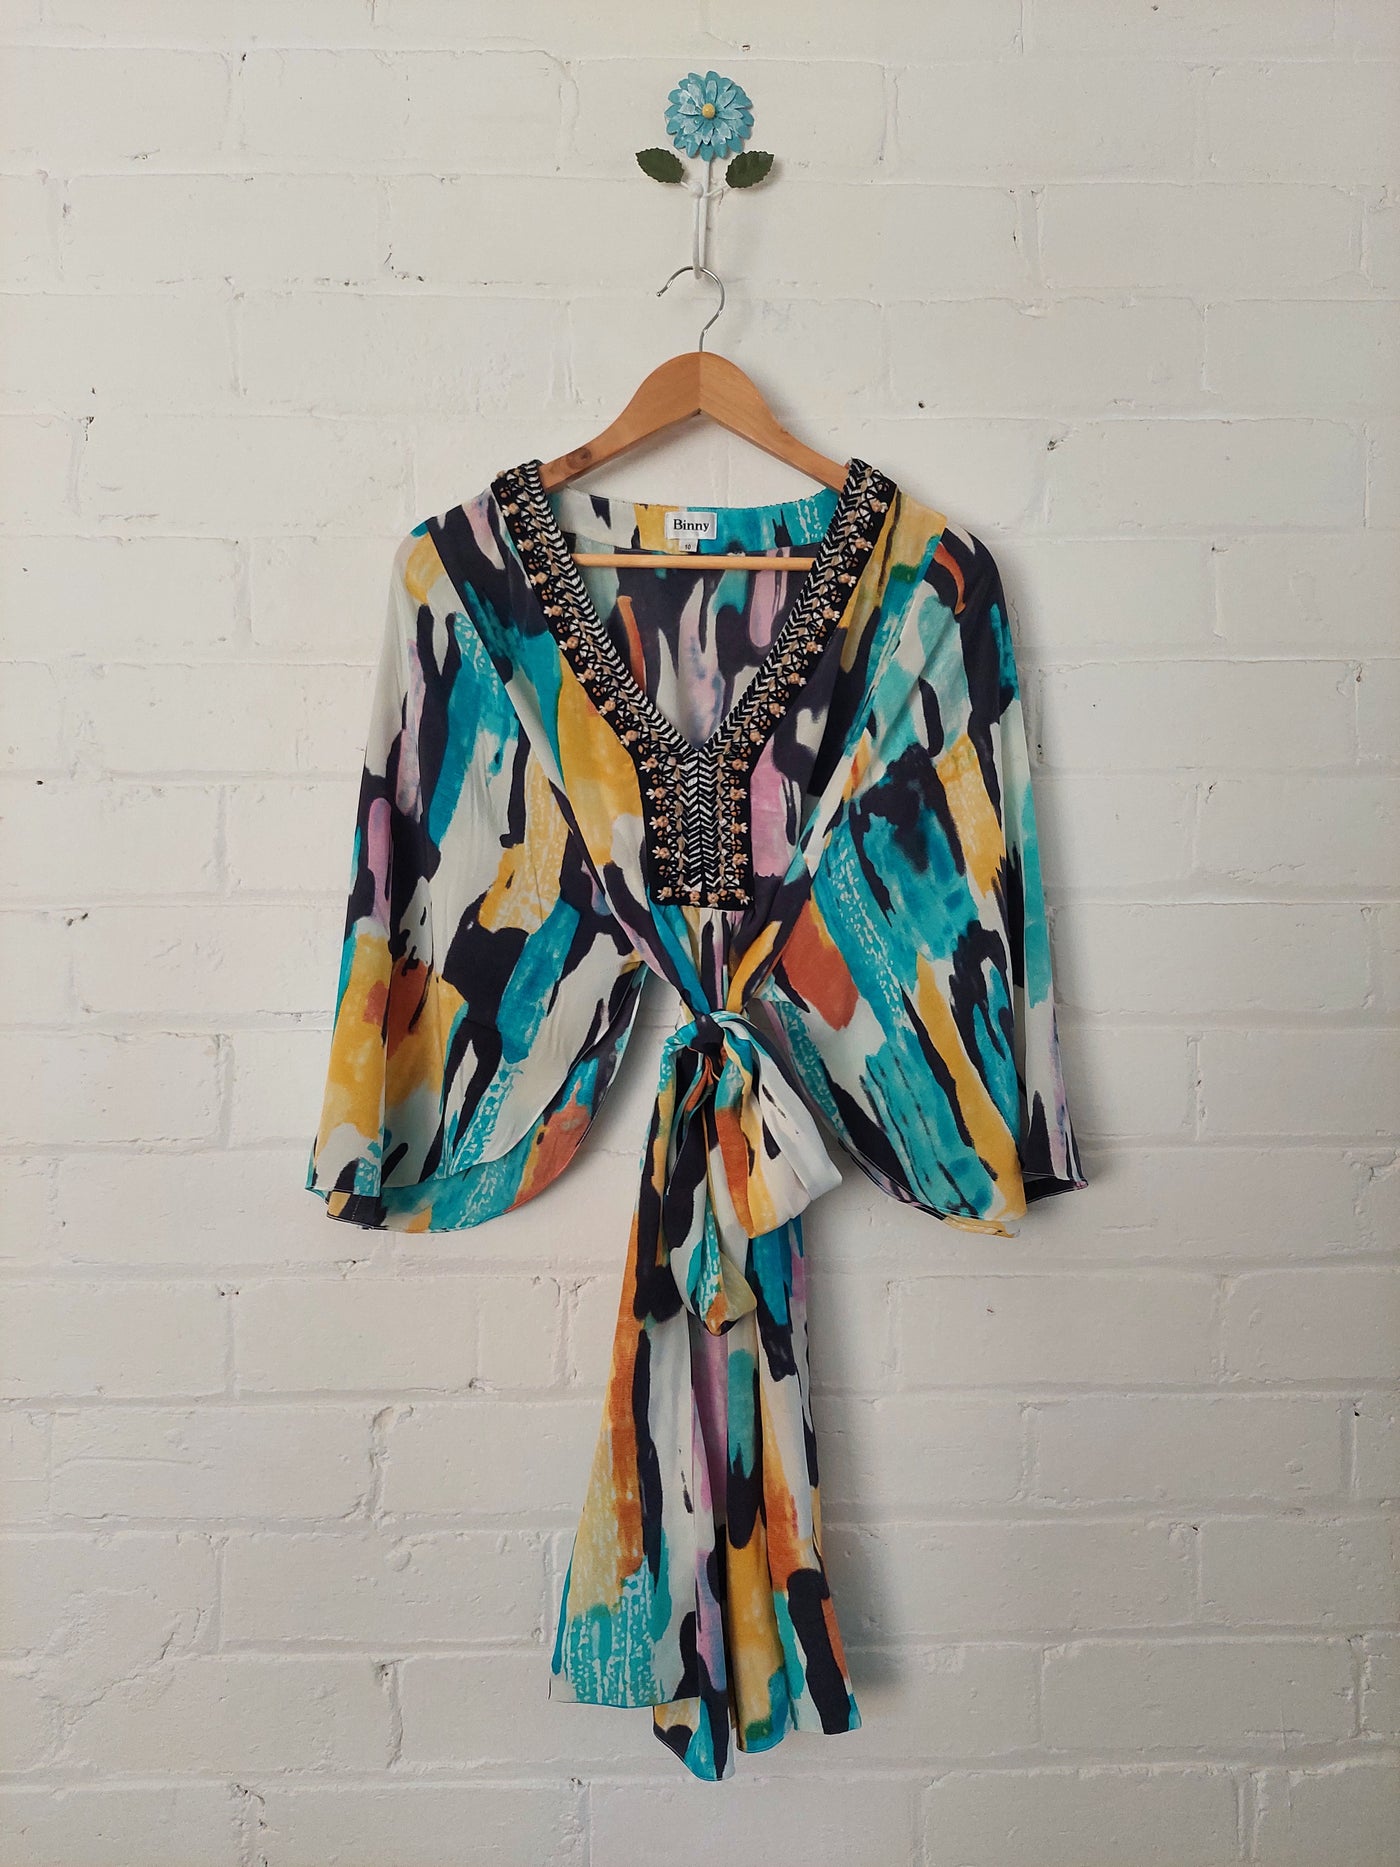 Binny 100% Silk kaftan dress with embroidery detail, Size 10